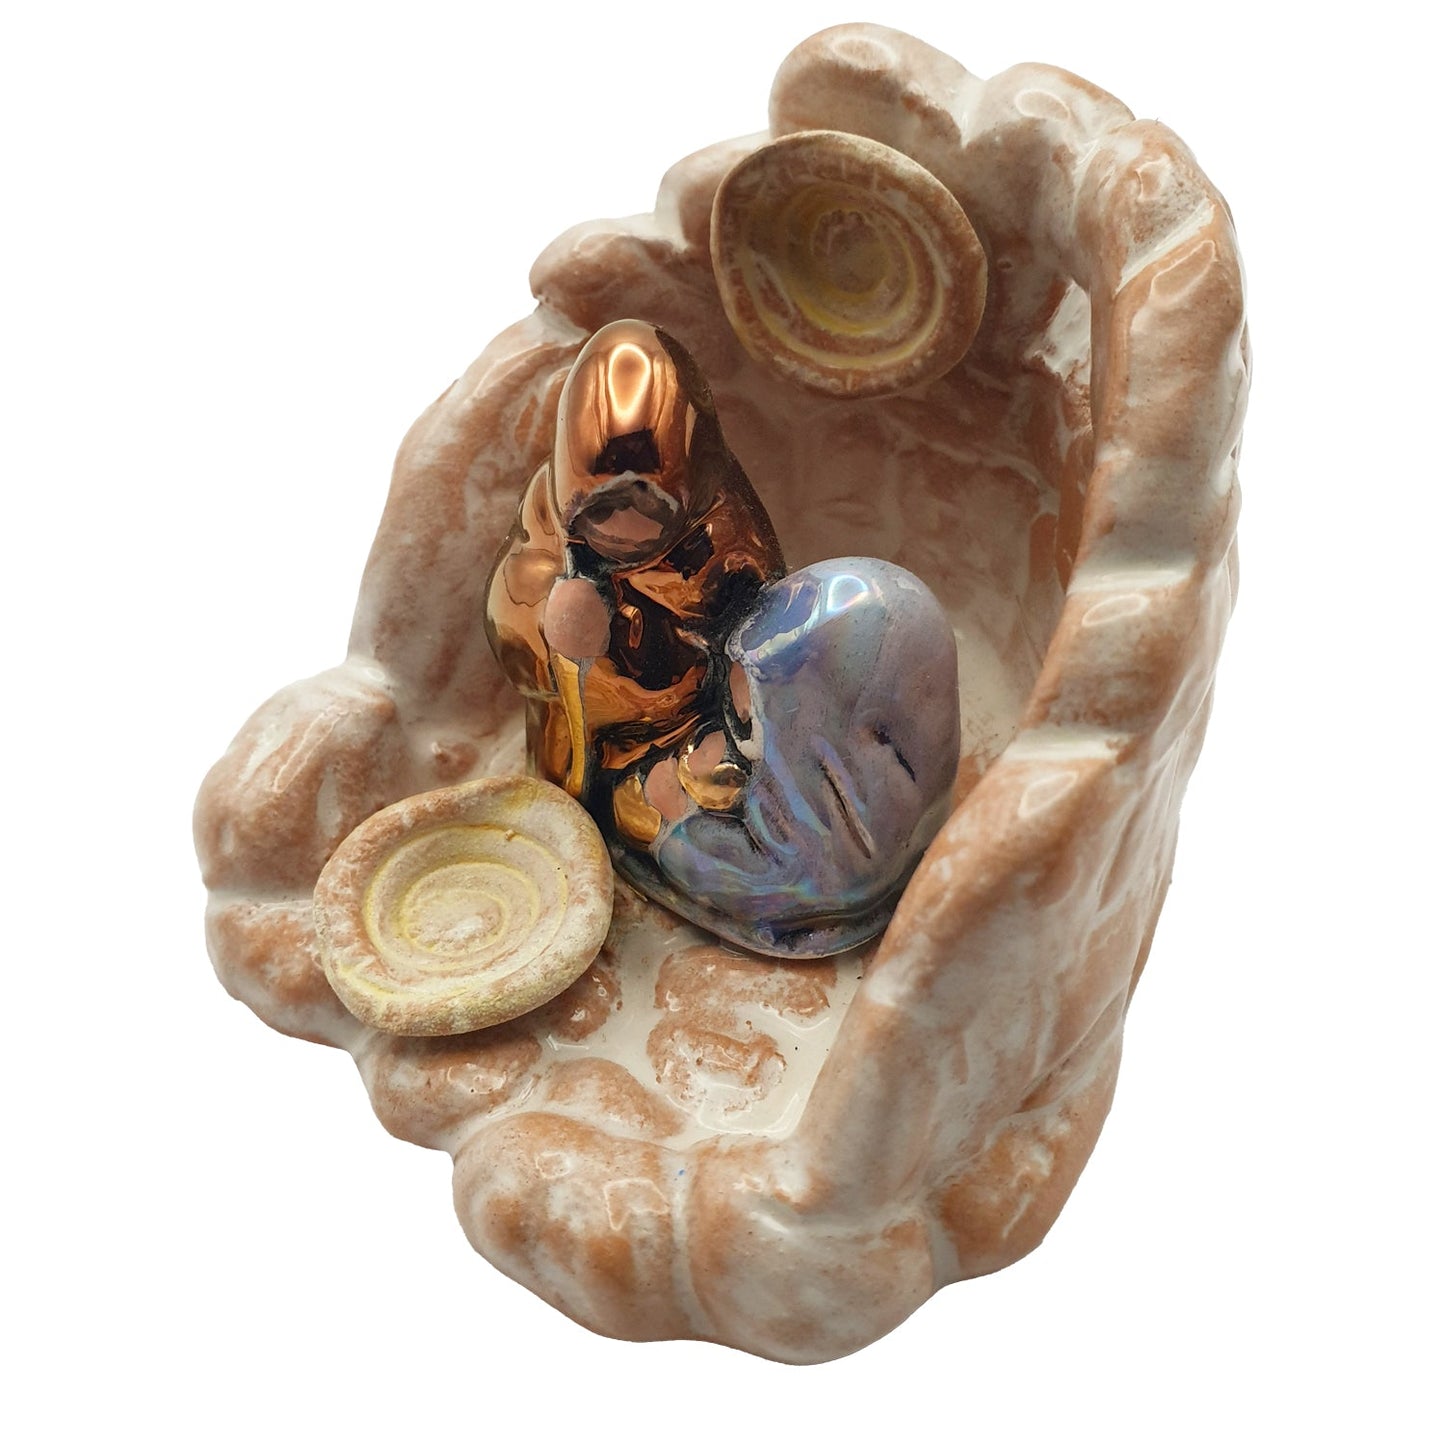 Presepe in ceramica sarda con nuraghe, smalto lucido, cm 6 - Artigianato Pasella